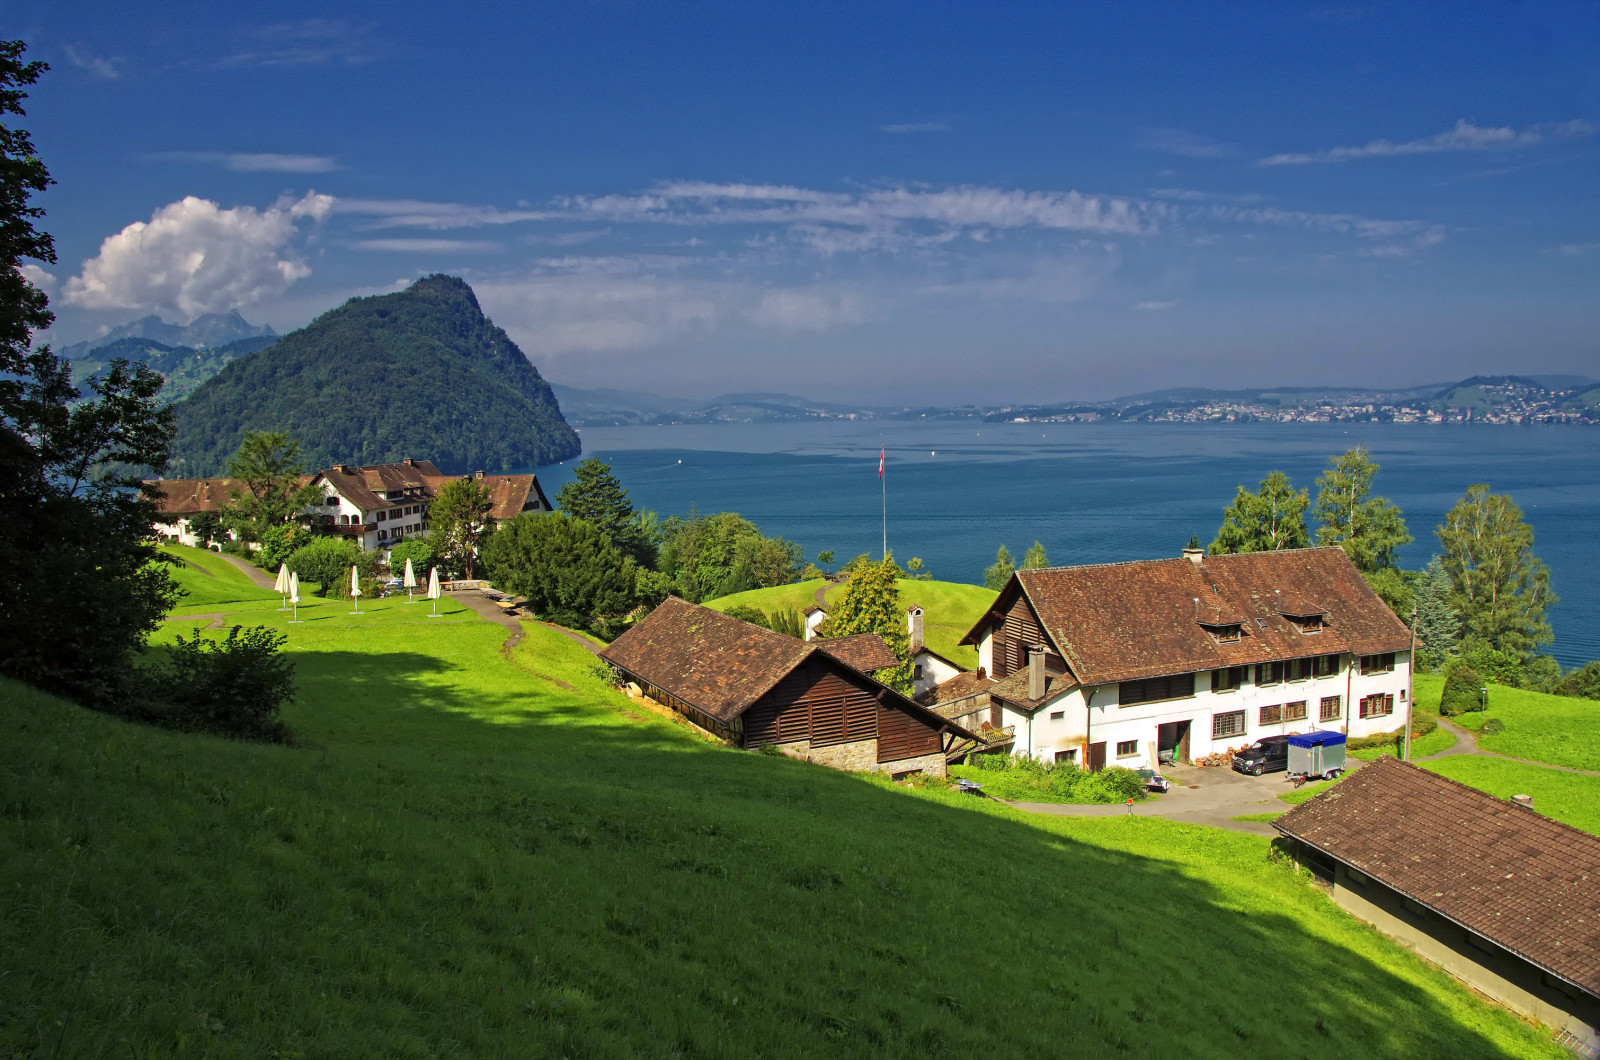 ประเทศสวิสเซอร์แลนด์, ทะเลสาป, ฝั่งทะเล, ภูเขา, บ้าน, ลาด, ทะเลสาบลูเซิร์น, Gersau